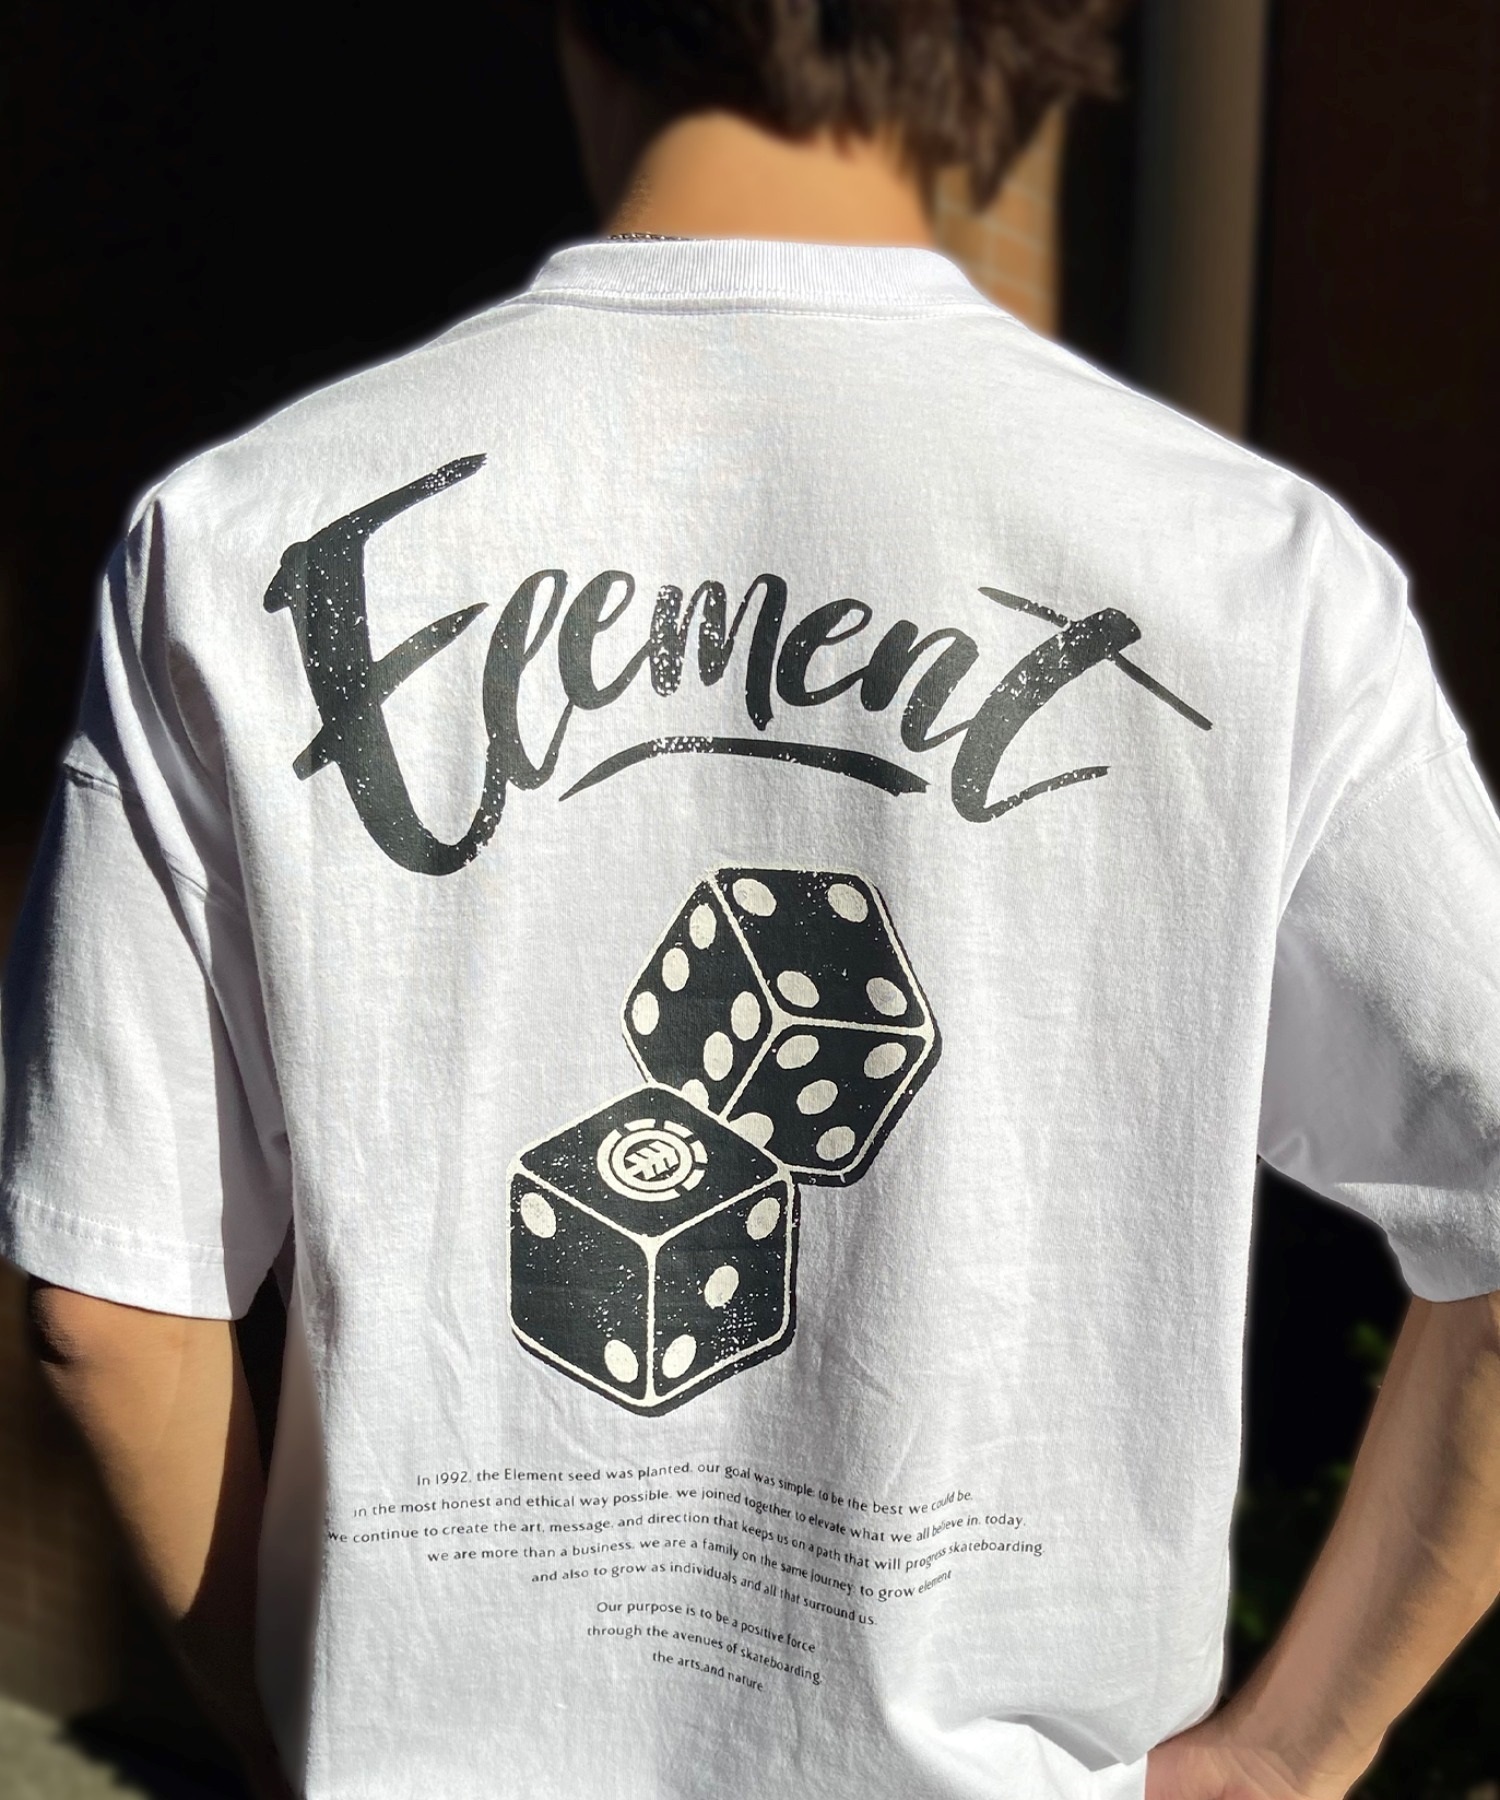 ELEMENT エレメント メンズ 半袖 Tシャツ オーバーサイズ ダイスロゴ バックプリント サイコロモチーフ ヴィンテージ風 かすれプリント BE021-252(FBK-M)